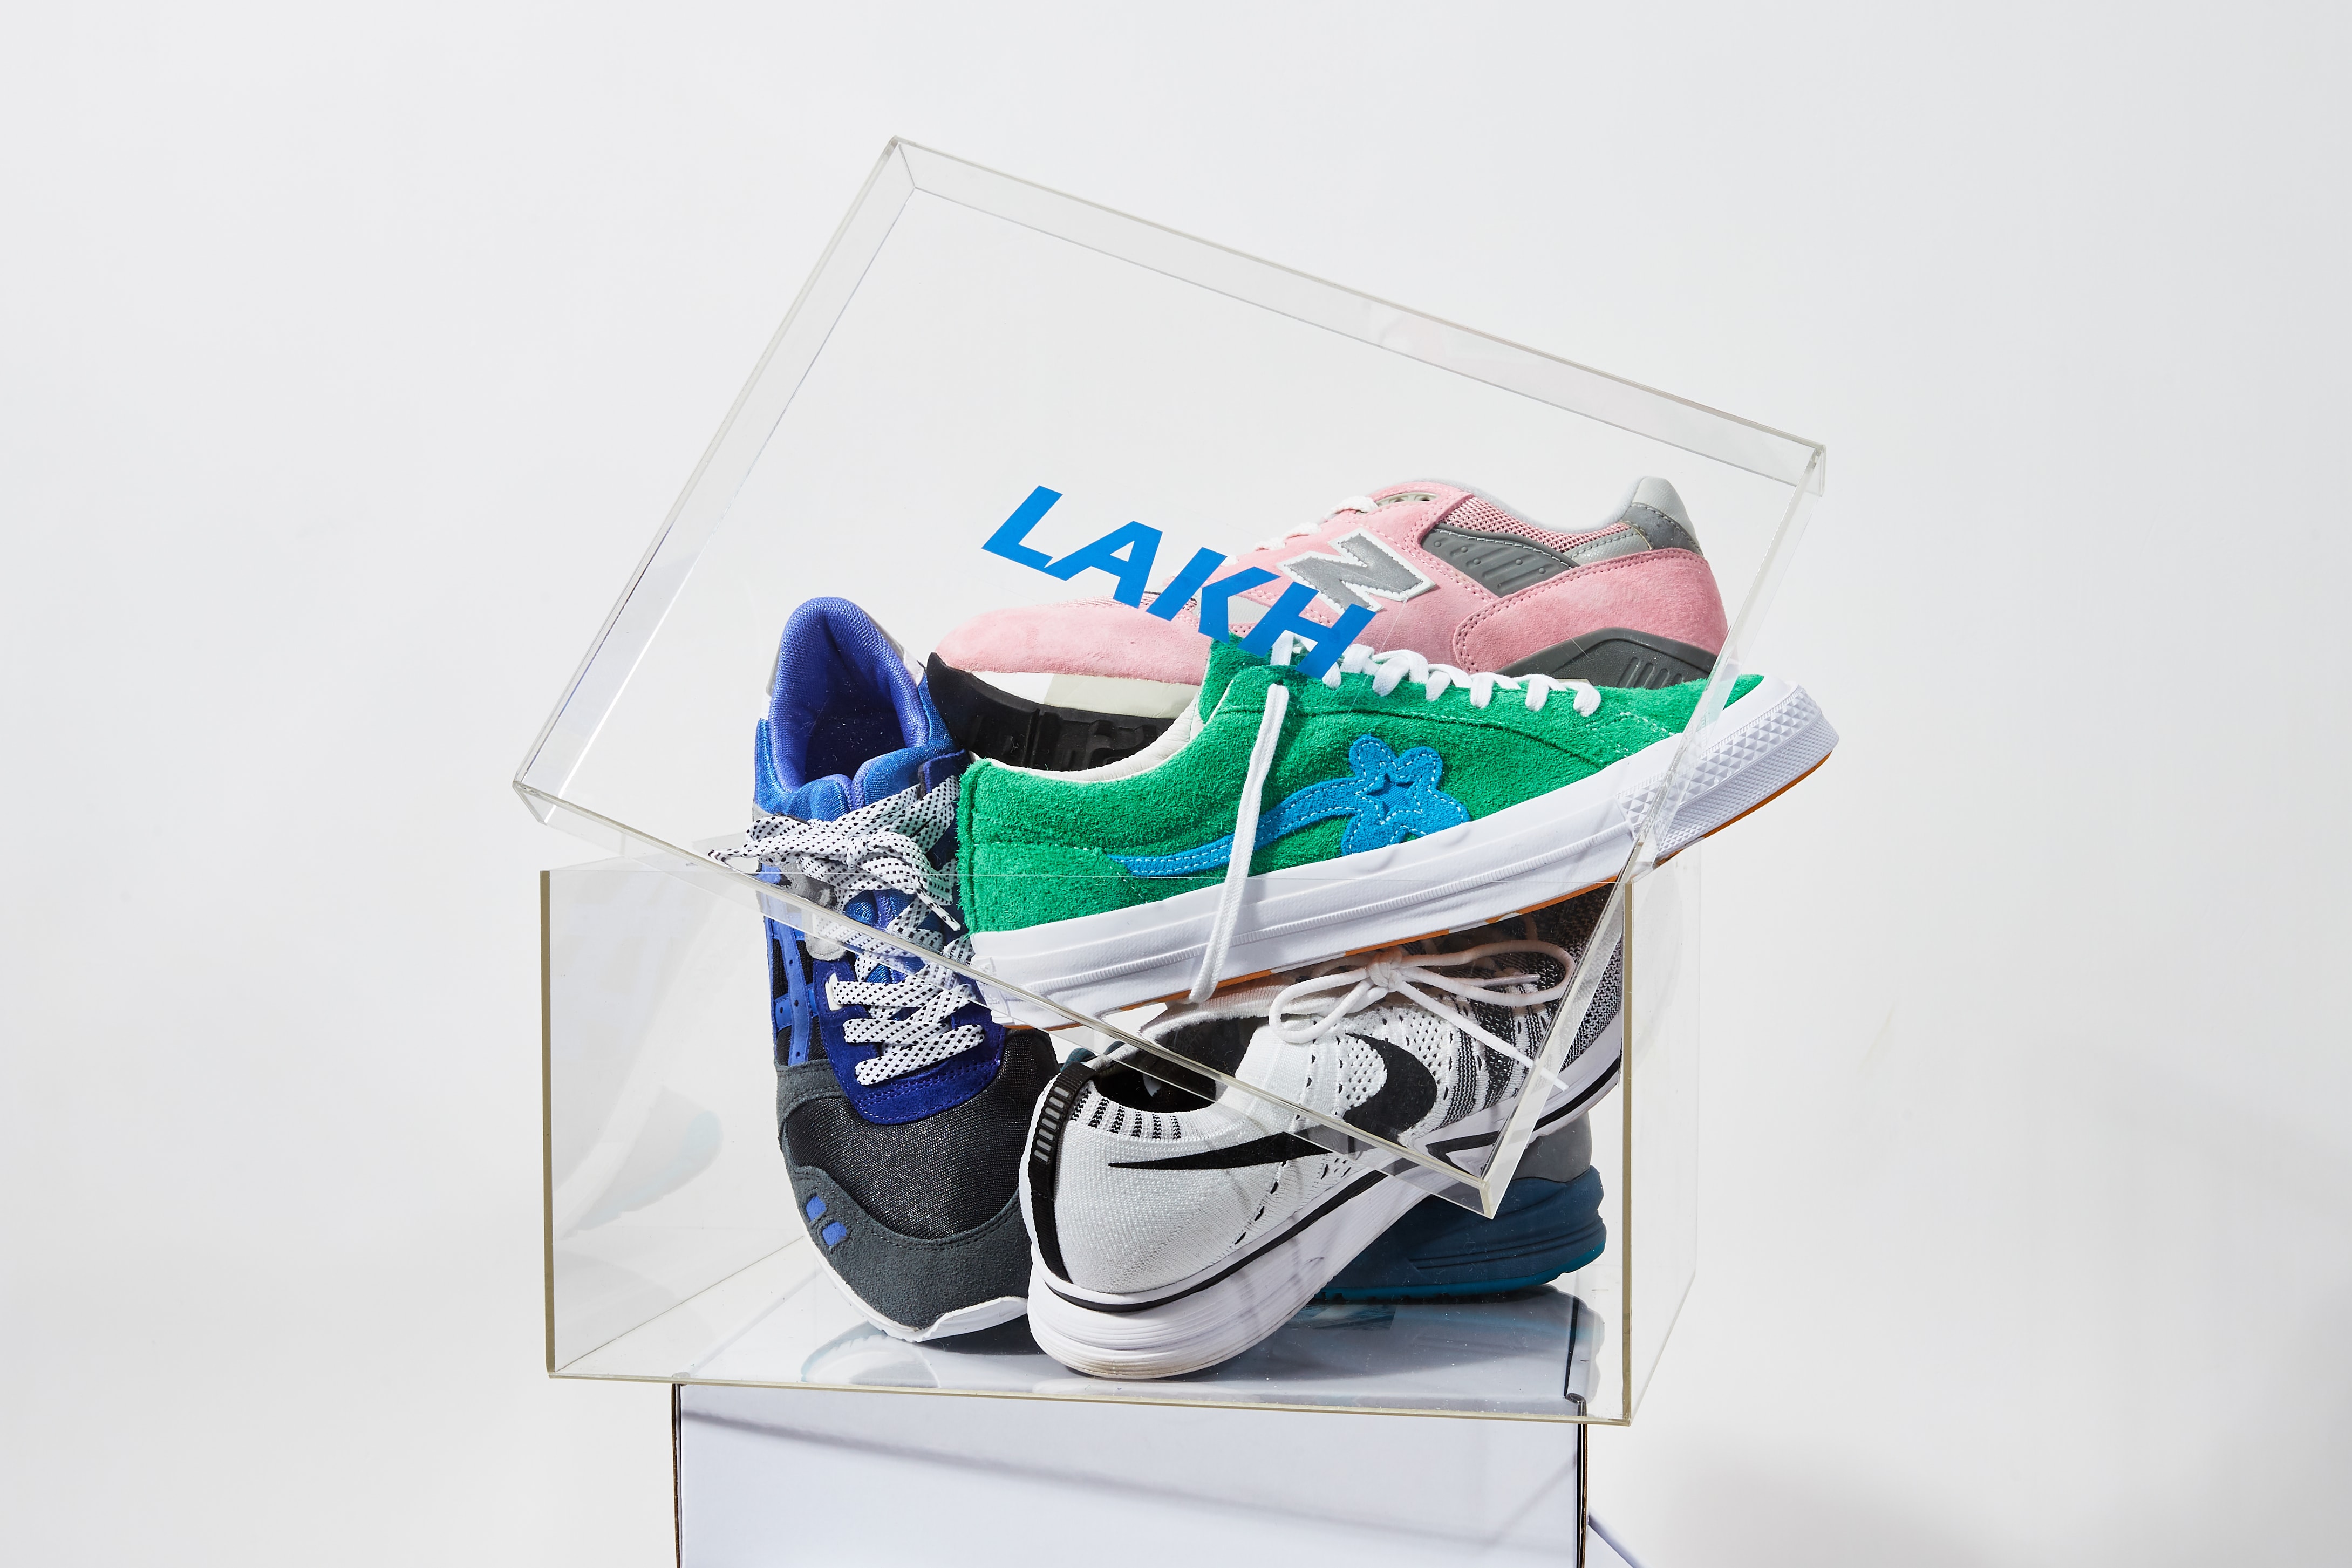 LAKH Supply 即將於香港舉辦期間限定球鞋展